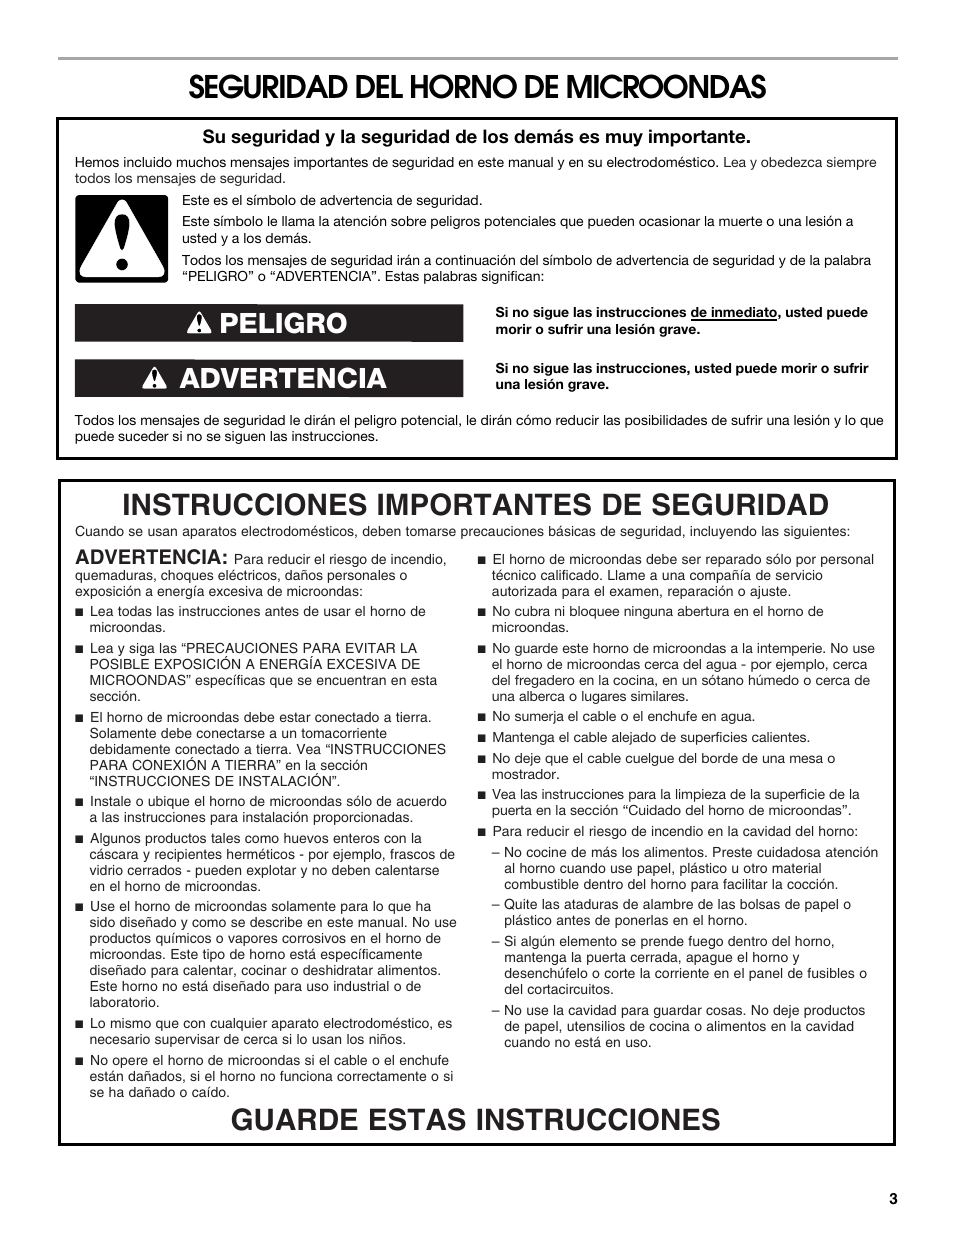 Seguridad del horno de microondas, Advertencia peligro, Advertencia | Whirlpool UMC5225DS Manual del usuario | Página 3 / 17